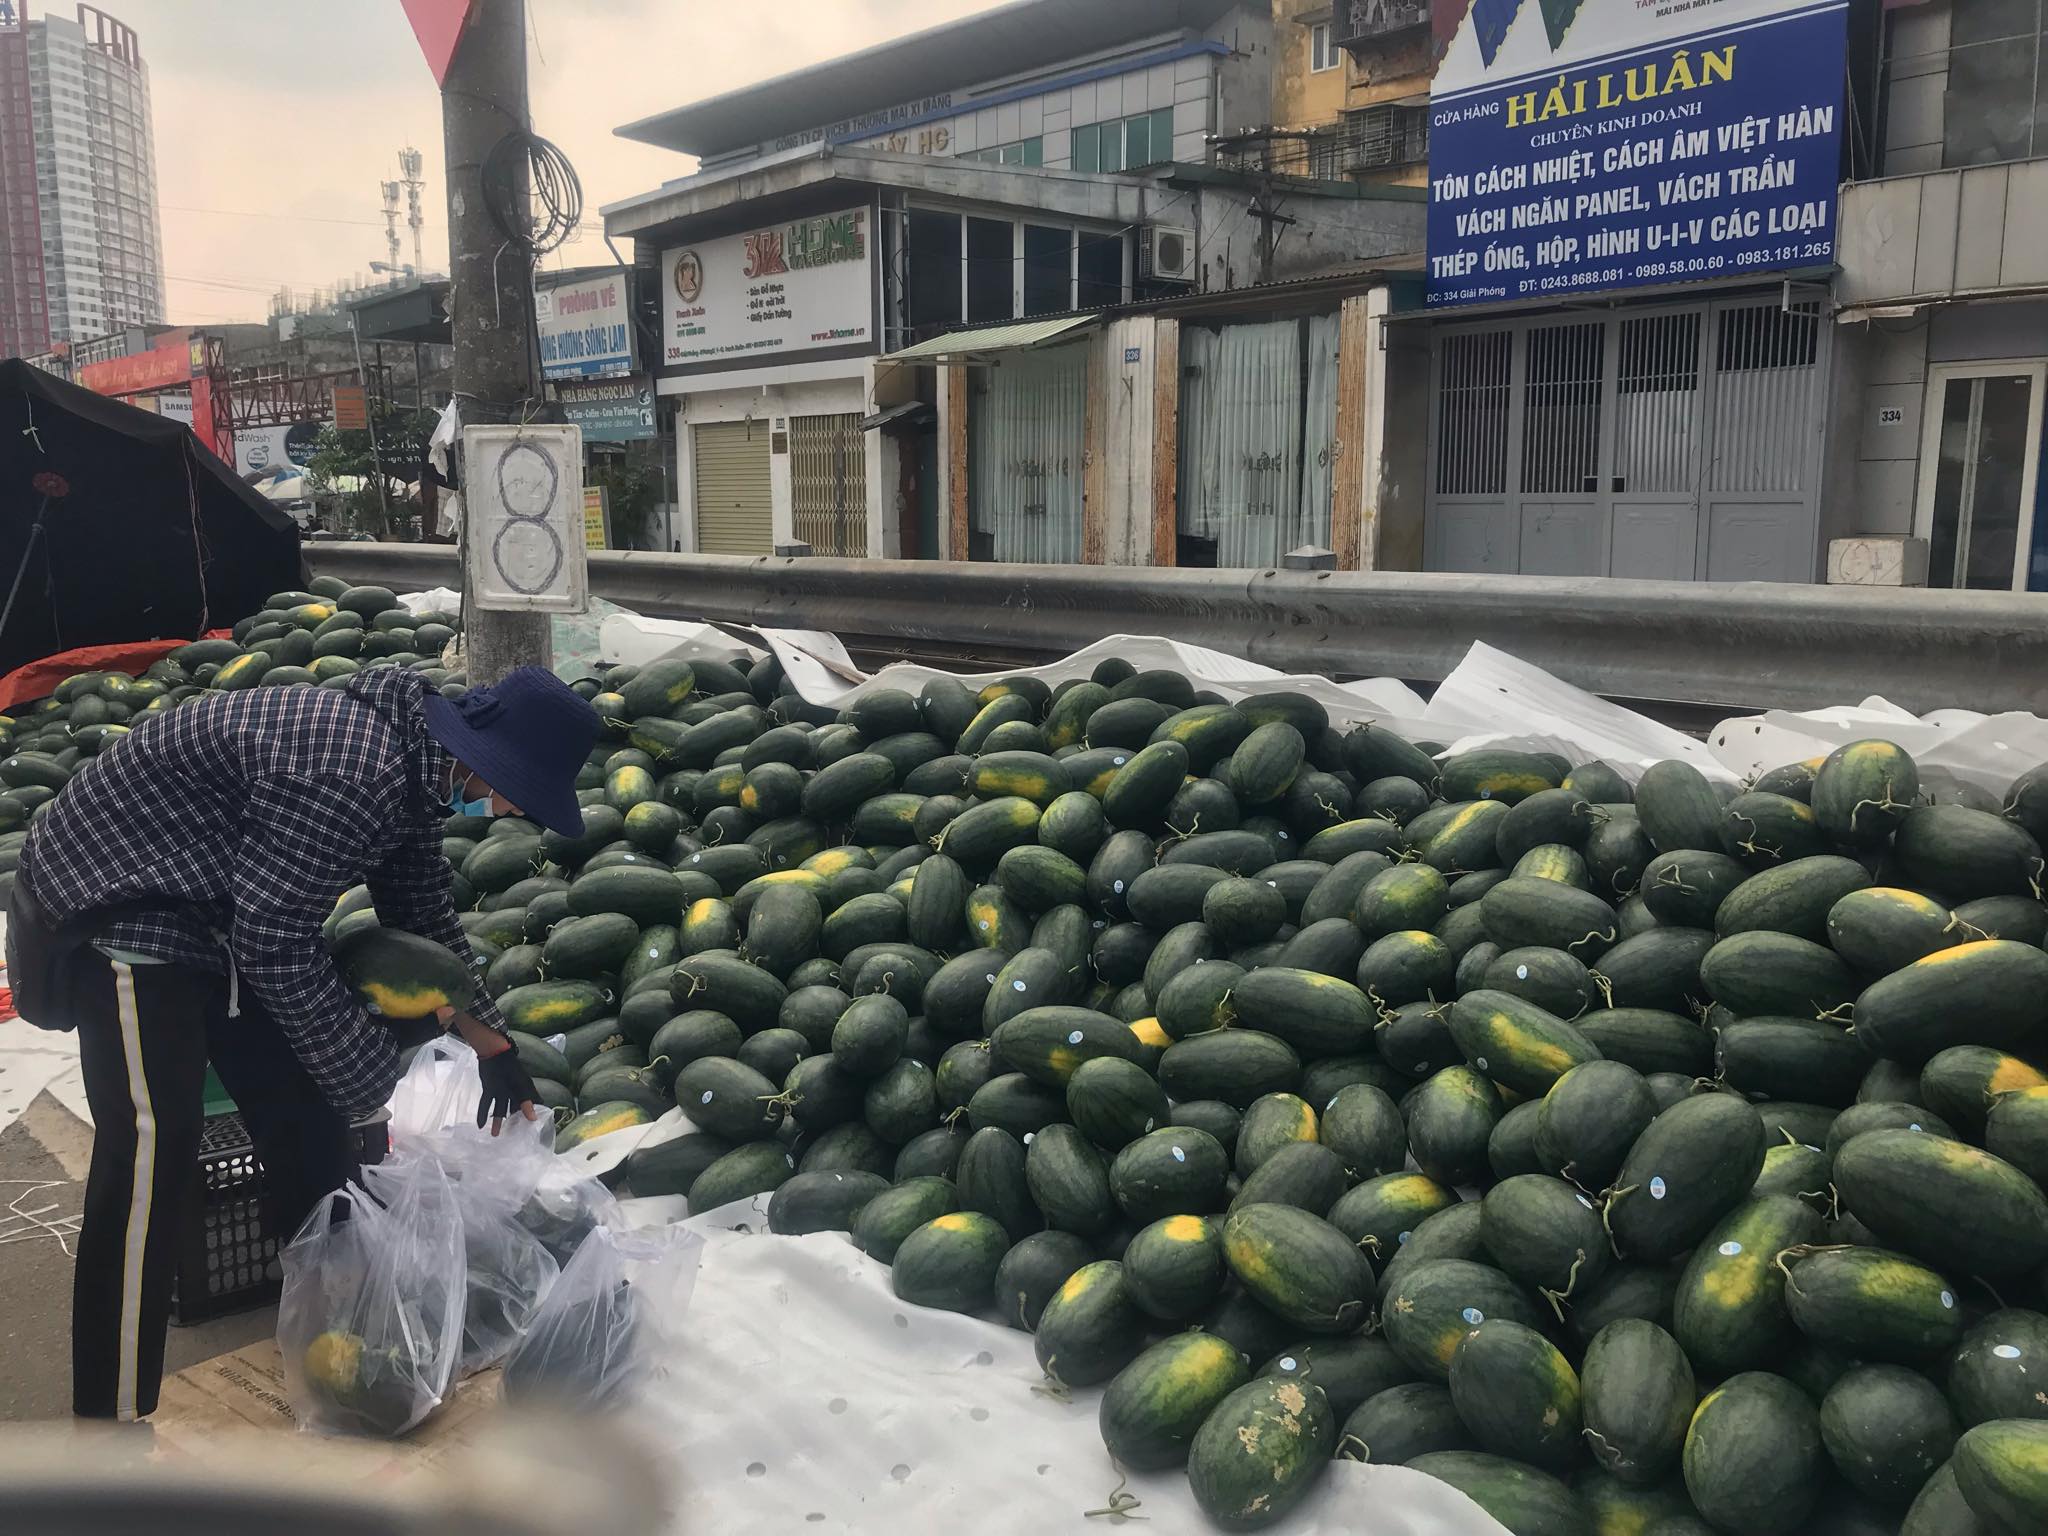 Hàng chục tấn dưa hấu được bày bán trên đường phố với giá 8.000 đồng/kg